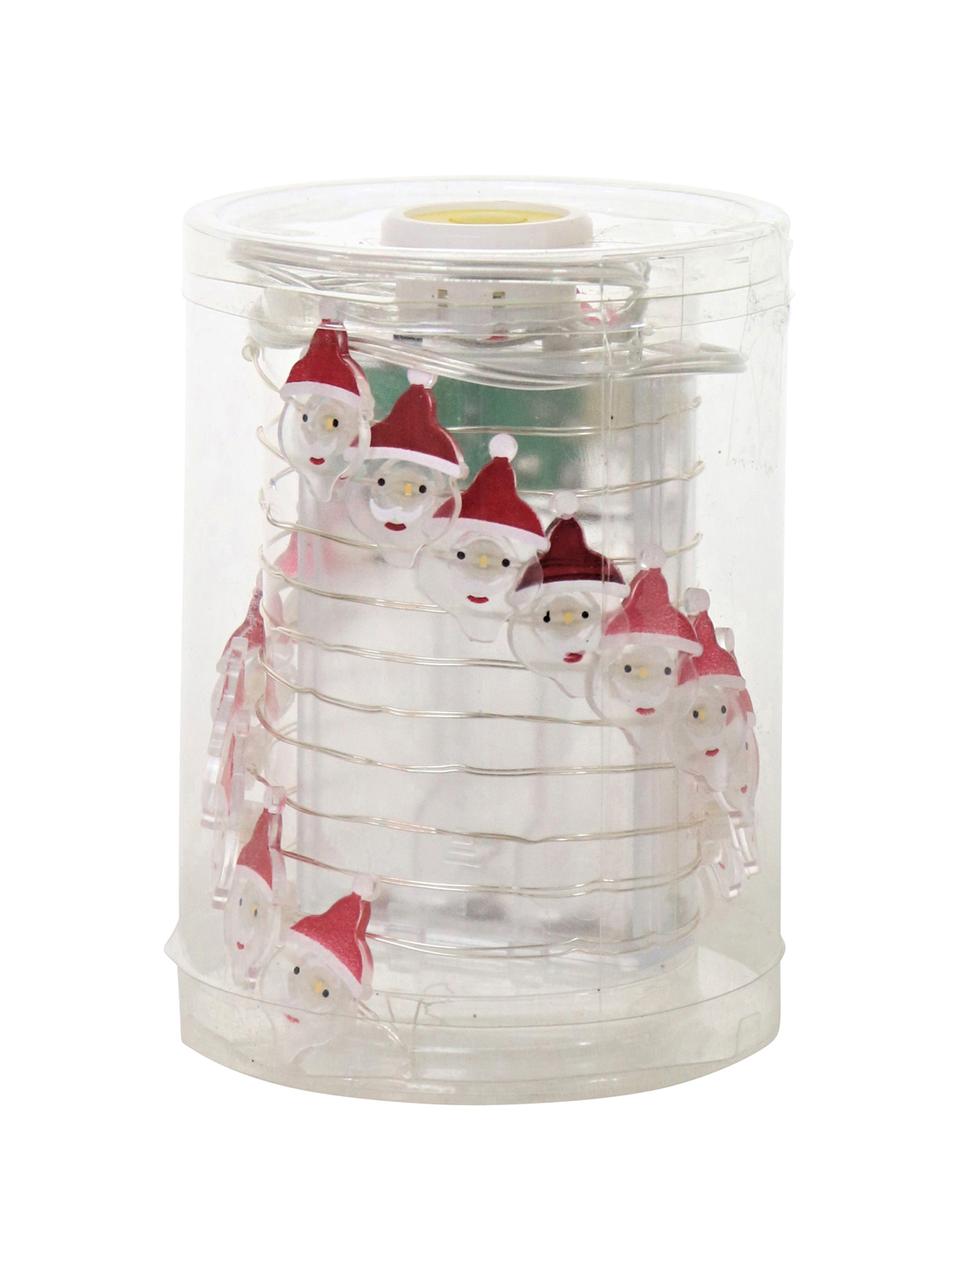 Ghirlanda a LED Santa Claus, Filo metallico, vetro acrilico, metallo, materiale sintetico, Bianco, rosso, Lung. 220 cm